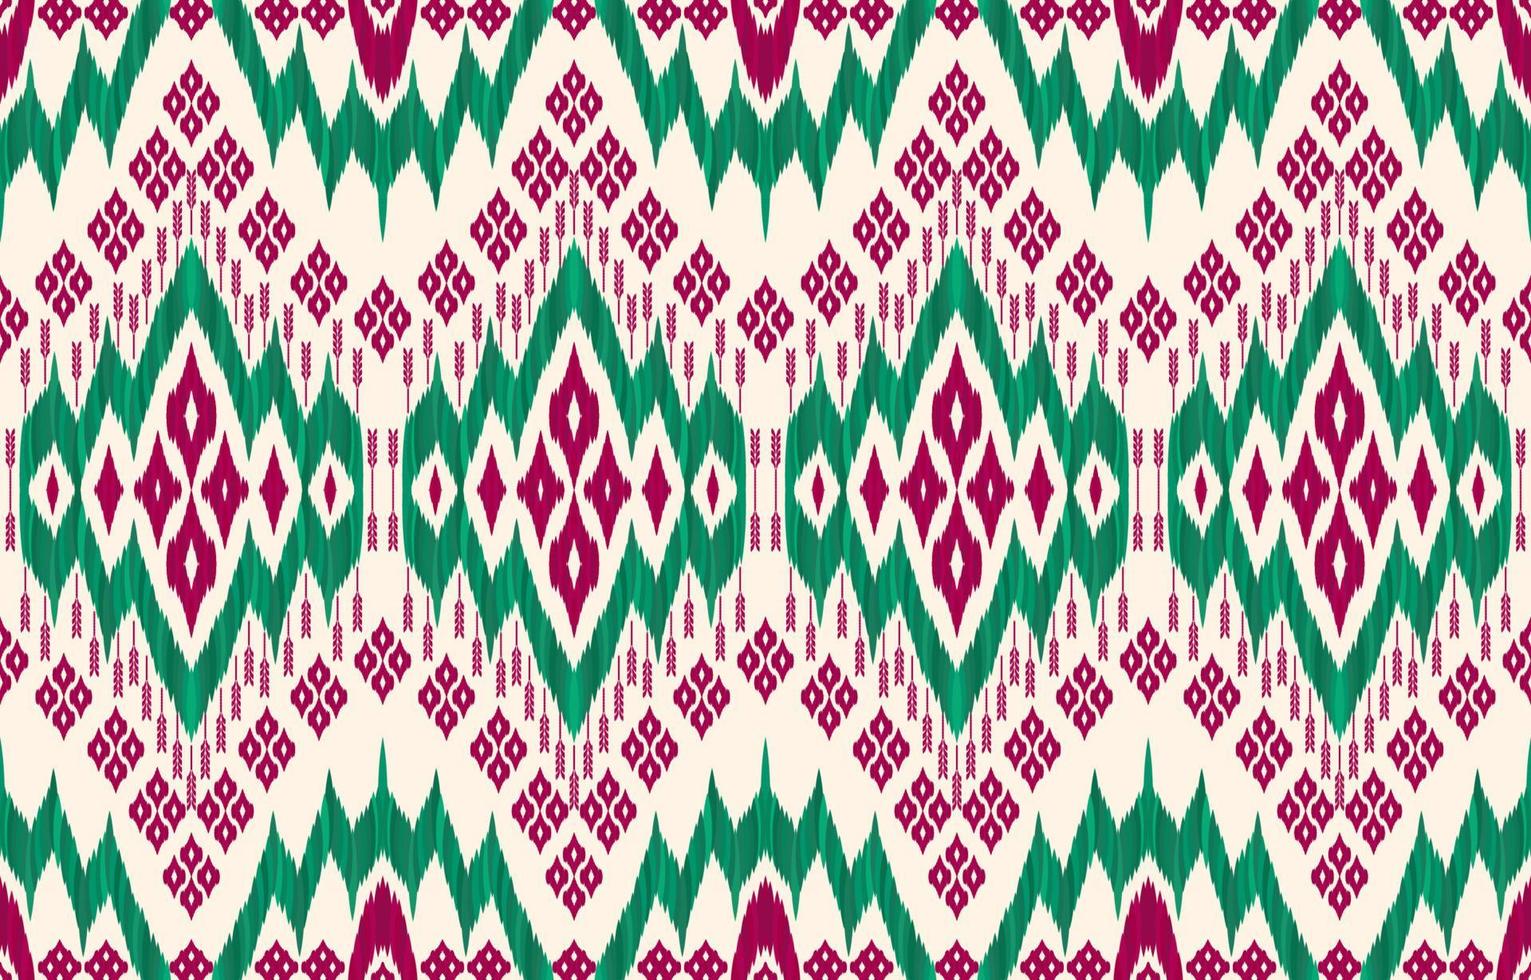 padrões de ikat de cor de natal. estilo retrô vintage tribal geométrico. tecido étnico ikat sem costura padrão. ilustração vetorial de impressão popular indiana navajo ikat. design para roupas de textura de parede de pano de fundo. vetor